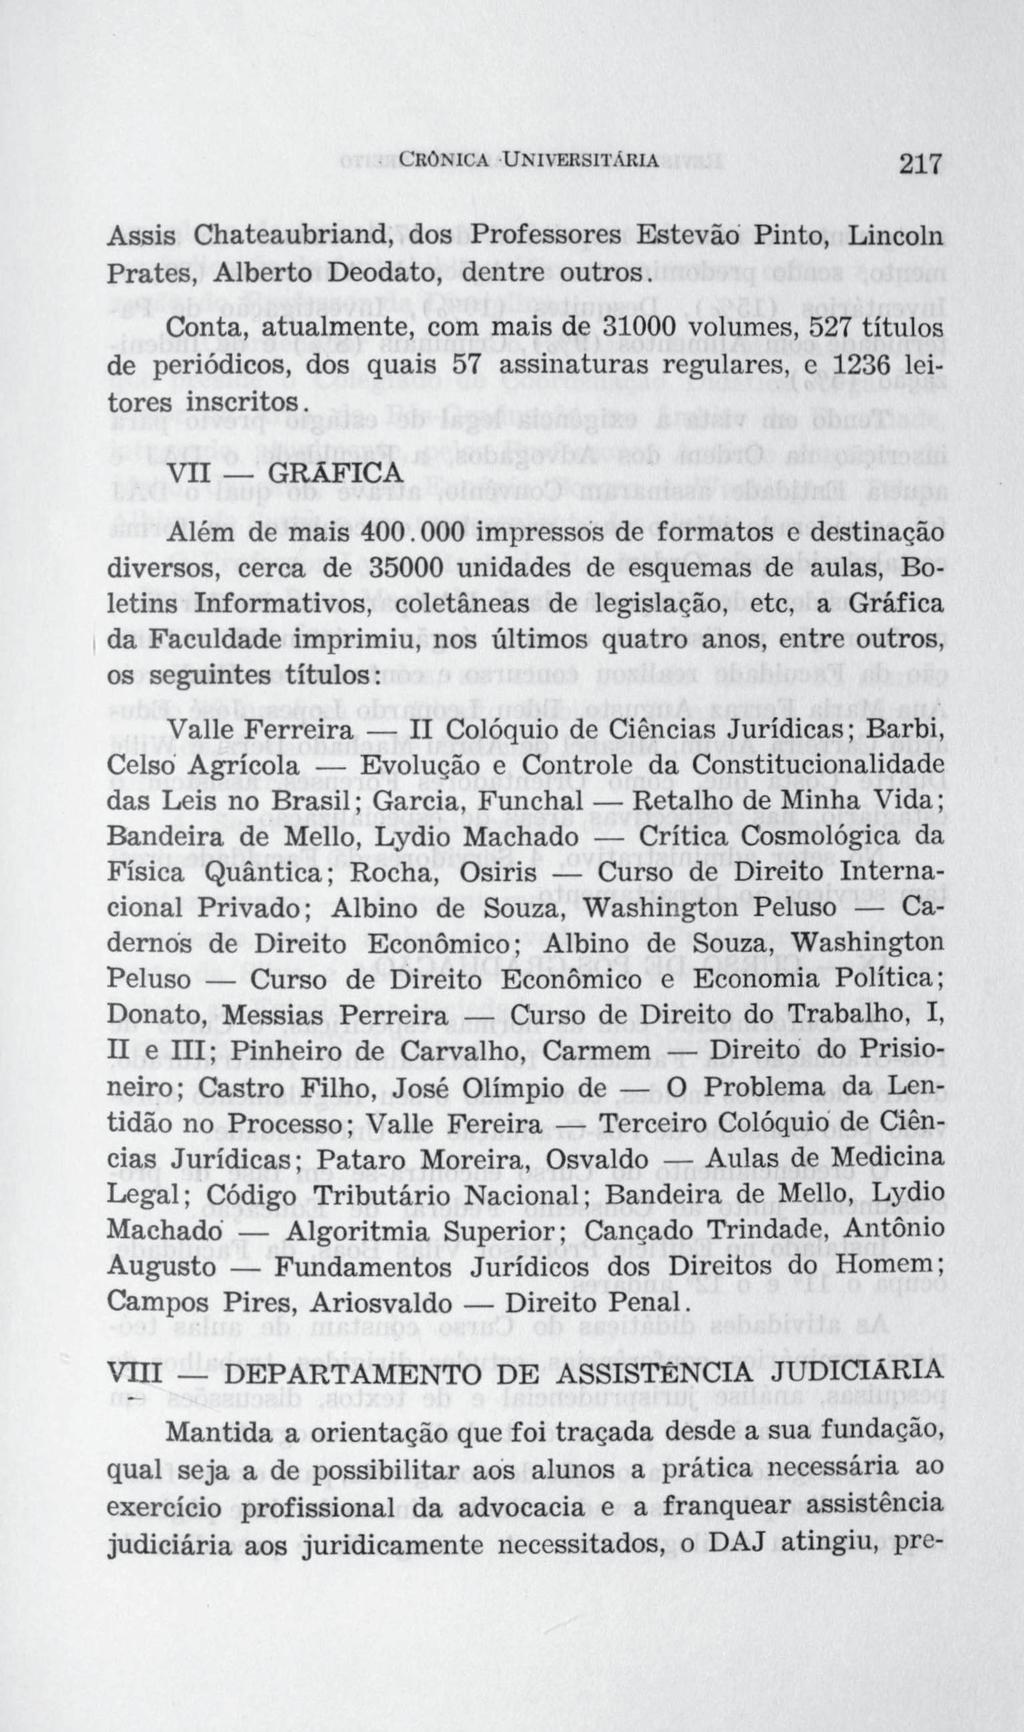 Assis Chateaubriand, dos Professores Estevão Pinto, Lincoln Prates, Alberto Deodato, dentre outros.